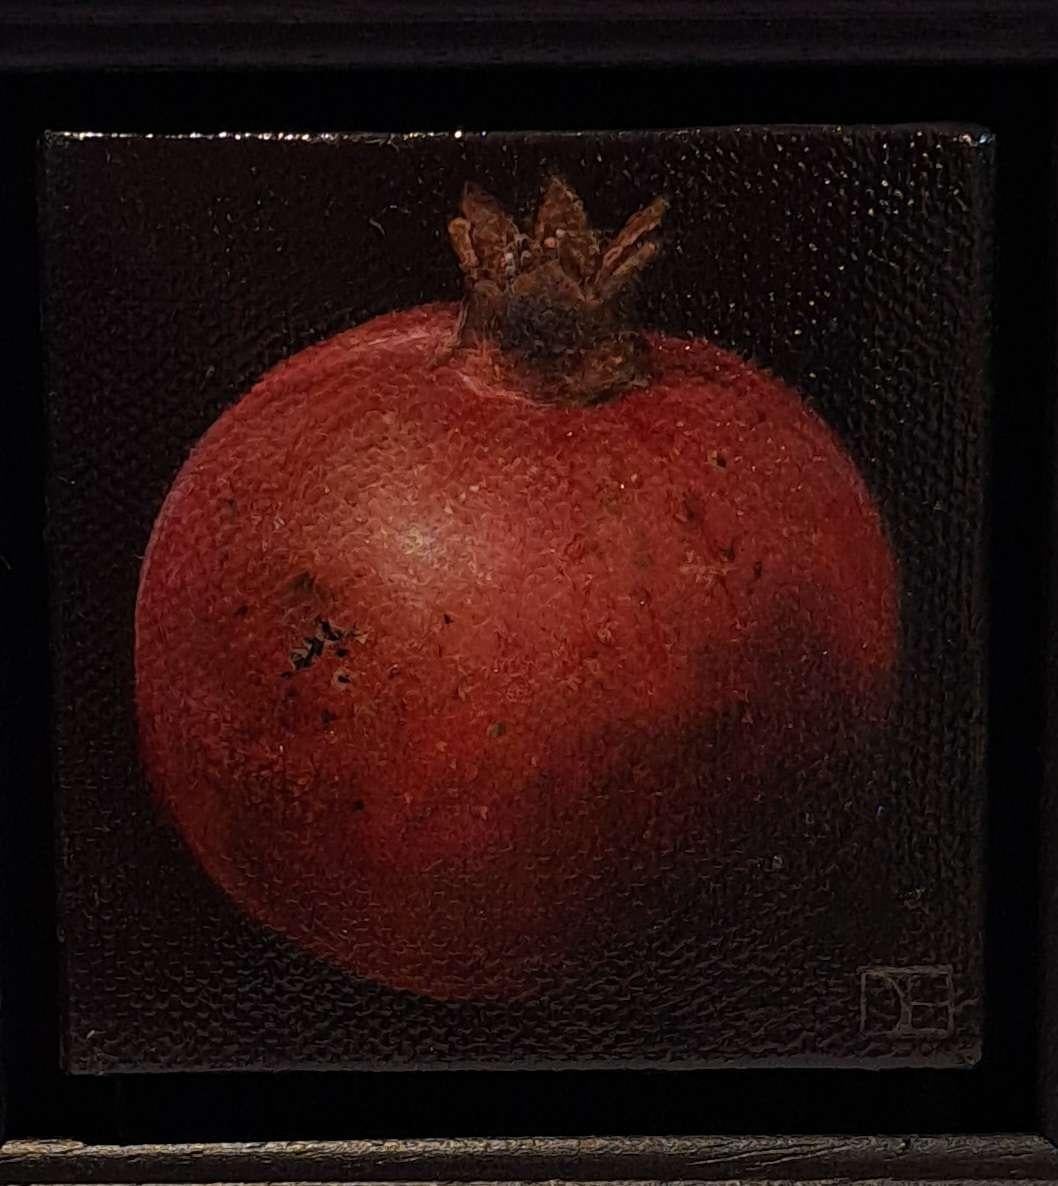 Grenade rouge mûre, Nature morte baroque, fruit - Réalisme Painting par Dani Humberstone